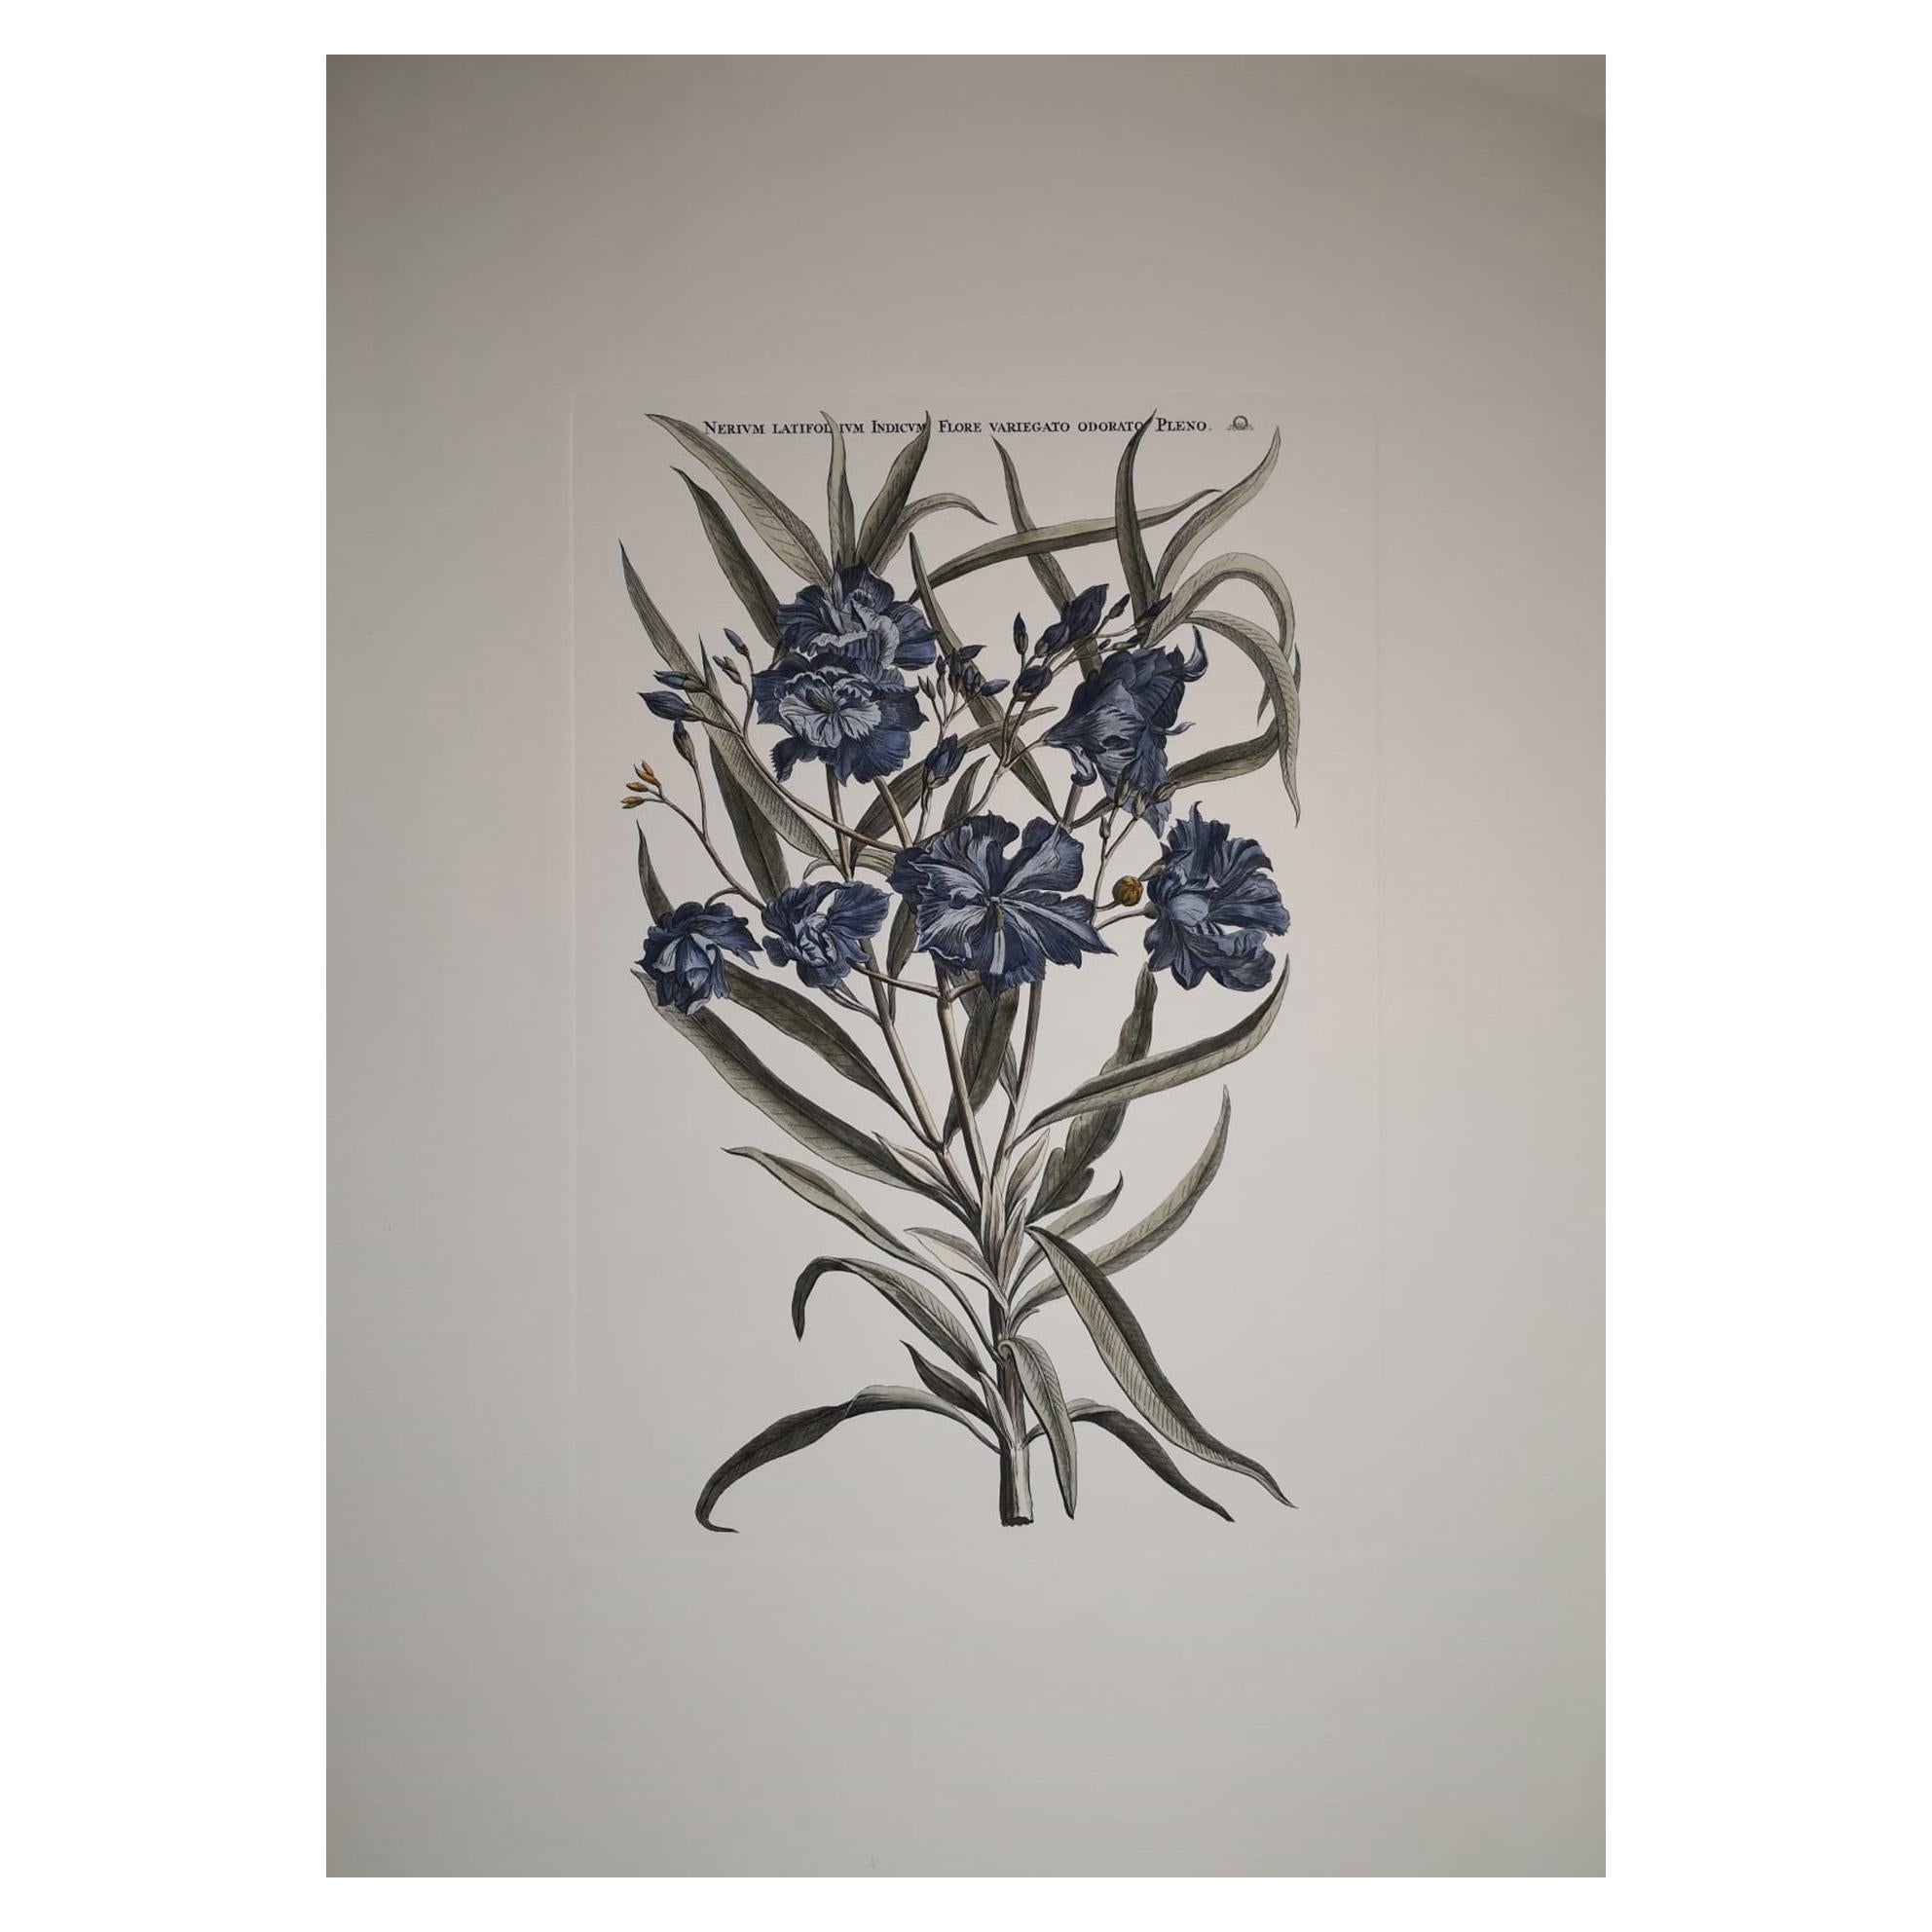 Italian Contemporary Hand Painted Botanical Print "Nerium Latifolium"